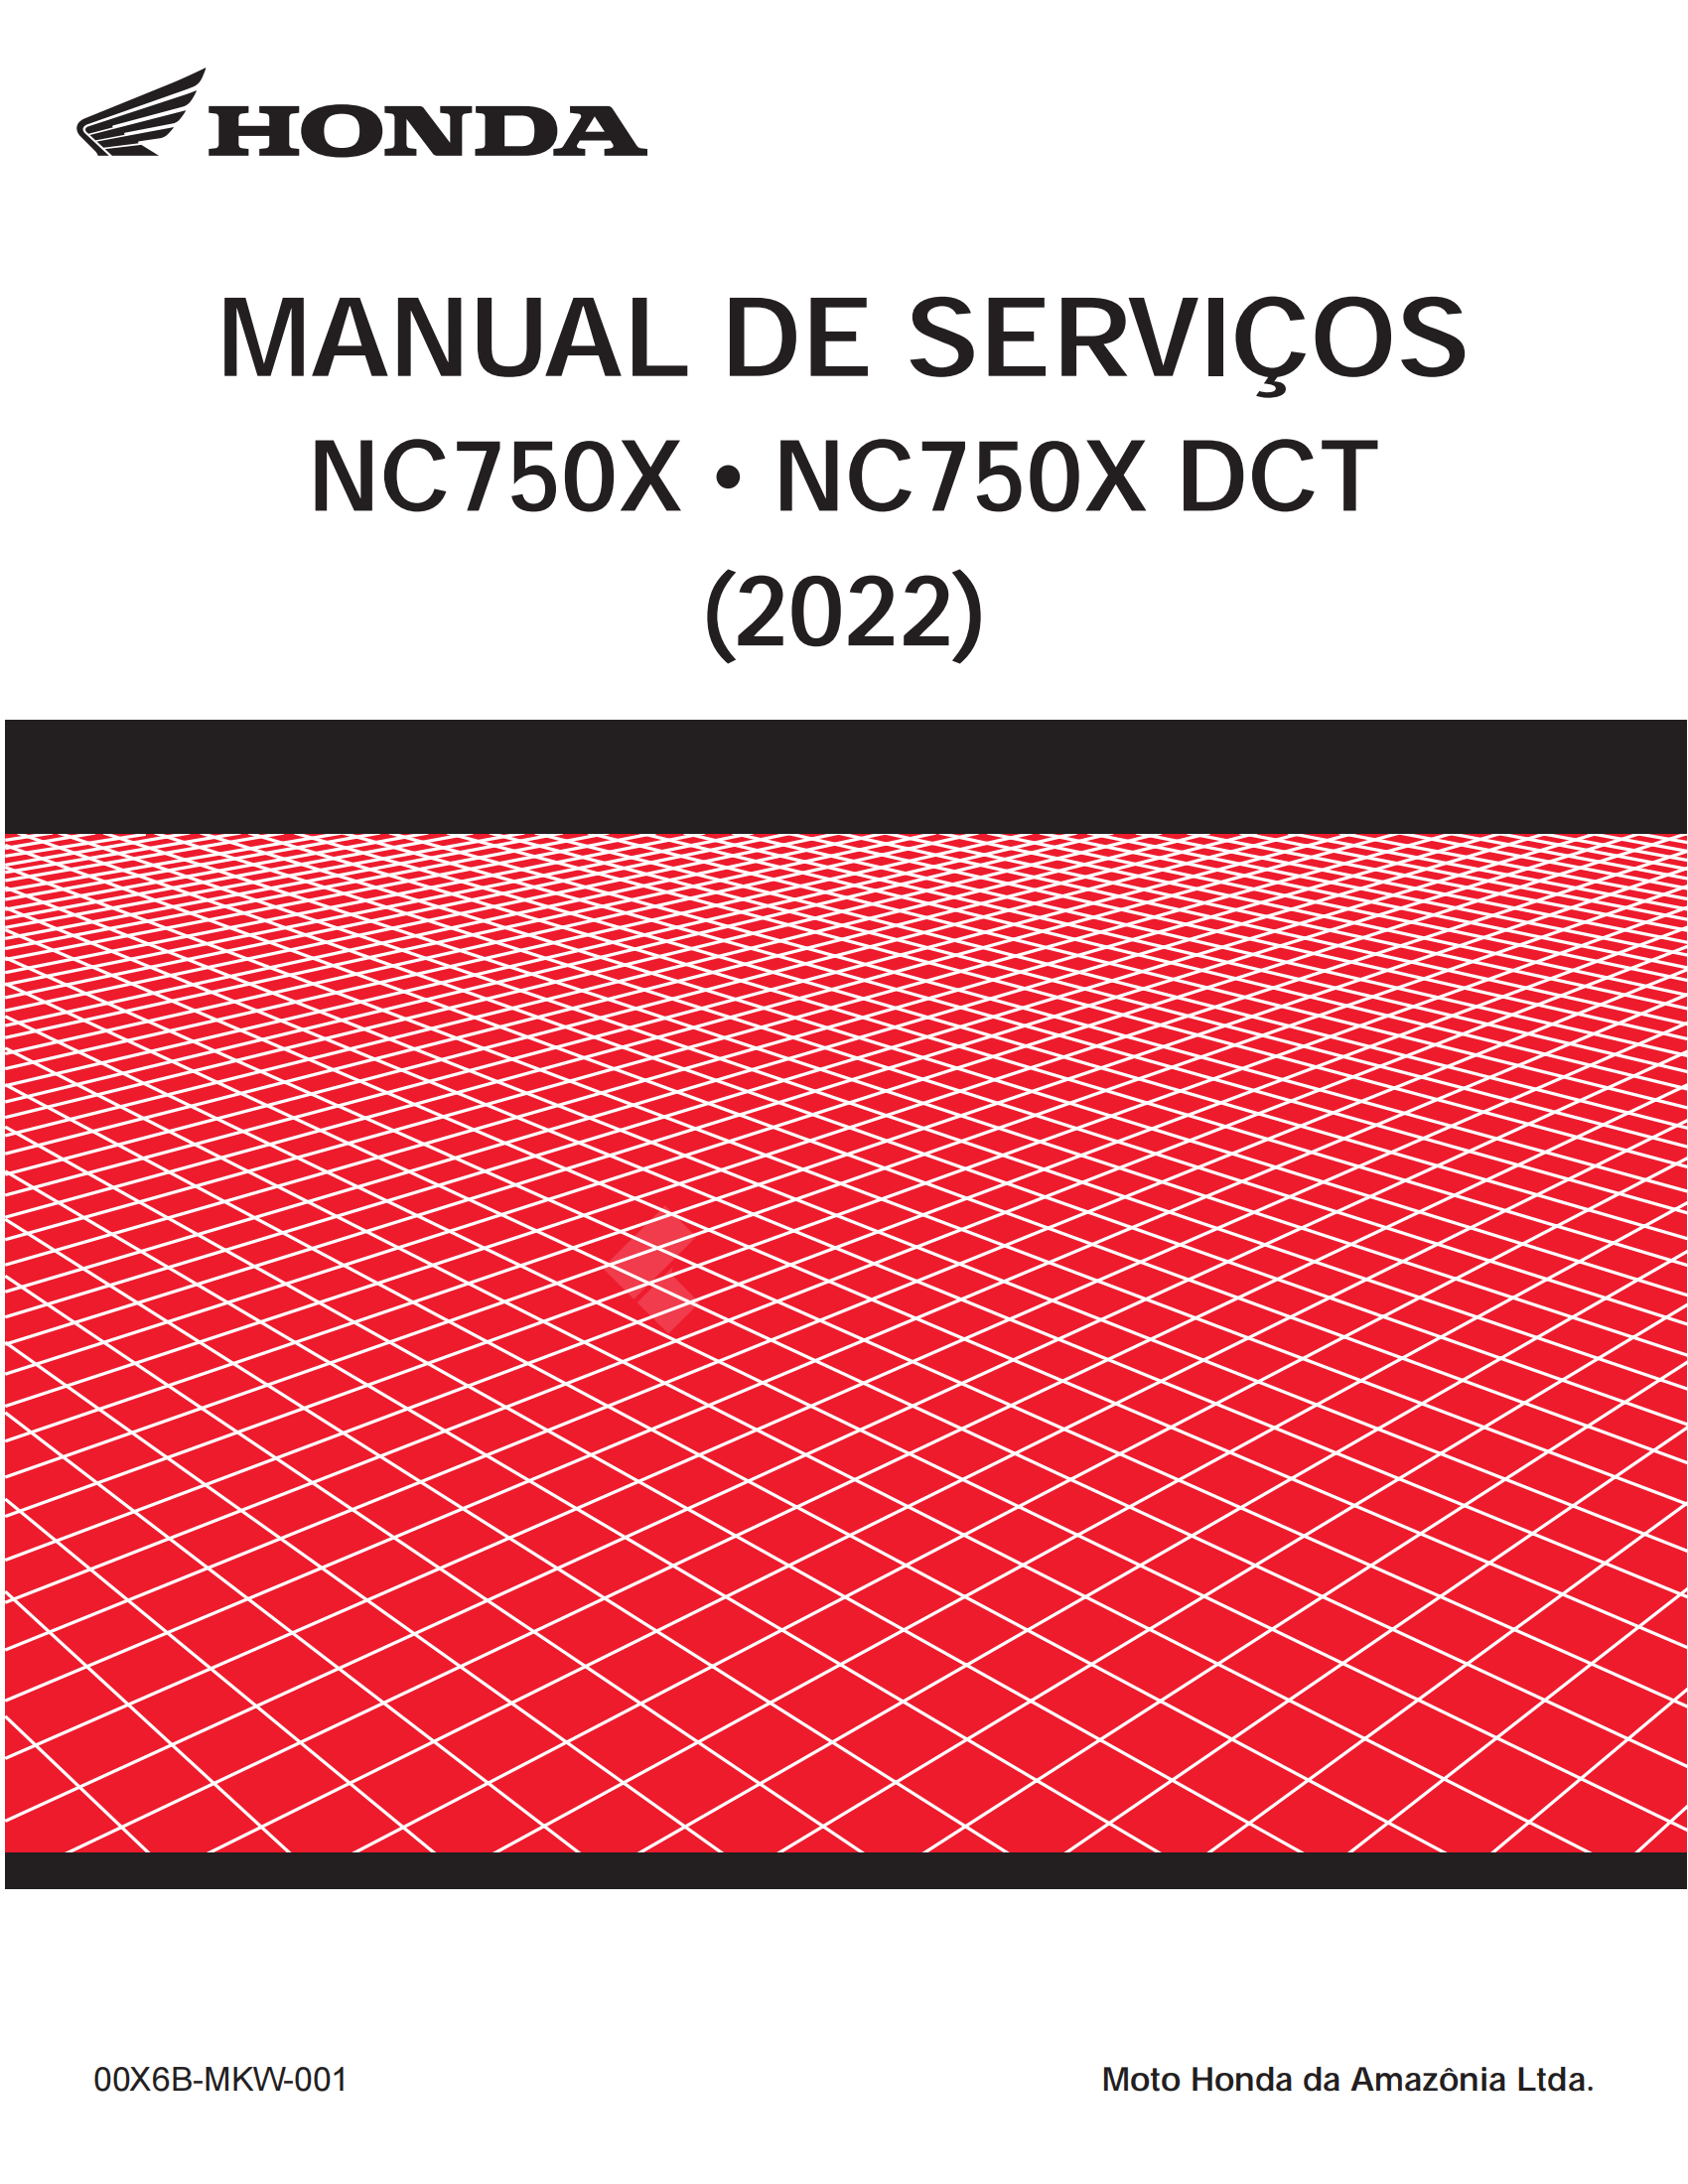 原版葡萄牙文2022-2023年本田nc750x维修手册nc750x dct 维修手册nc750mt维修手册插图